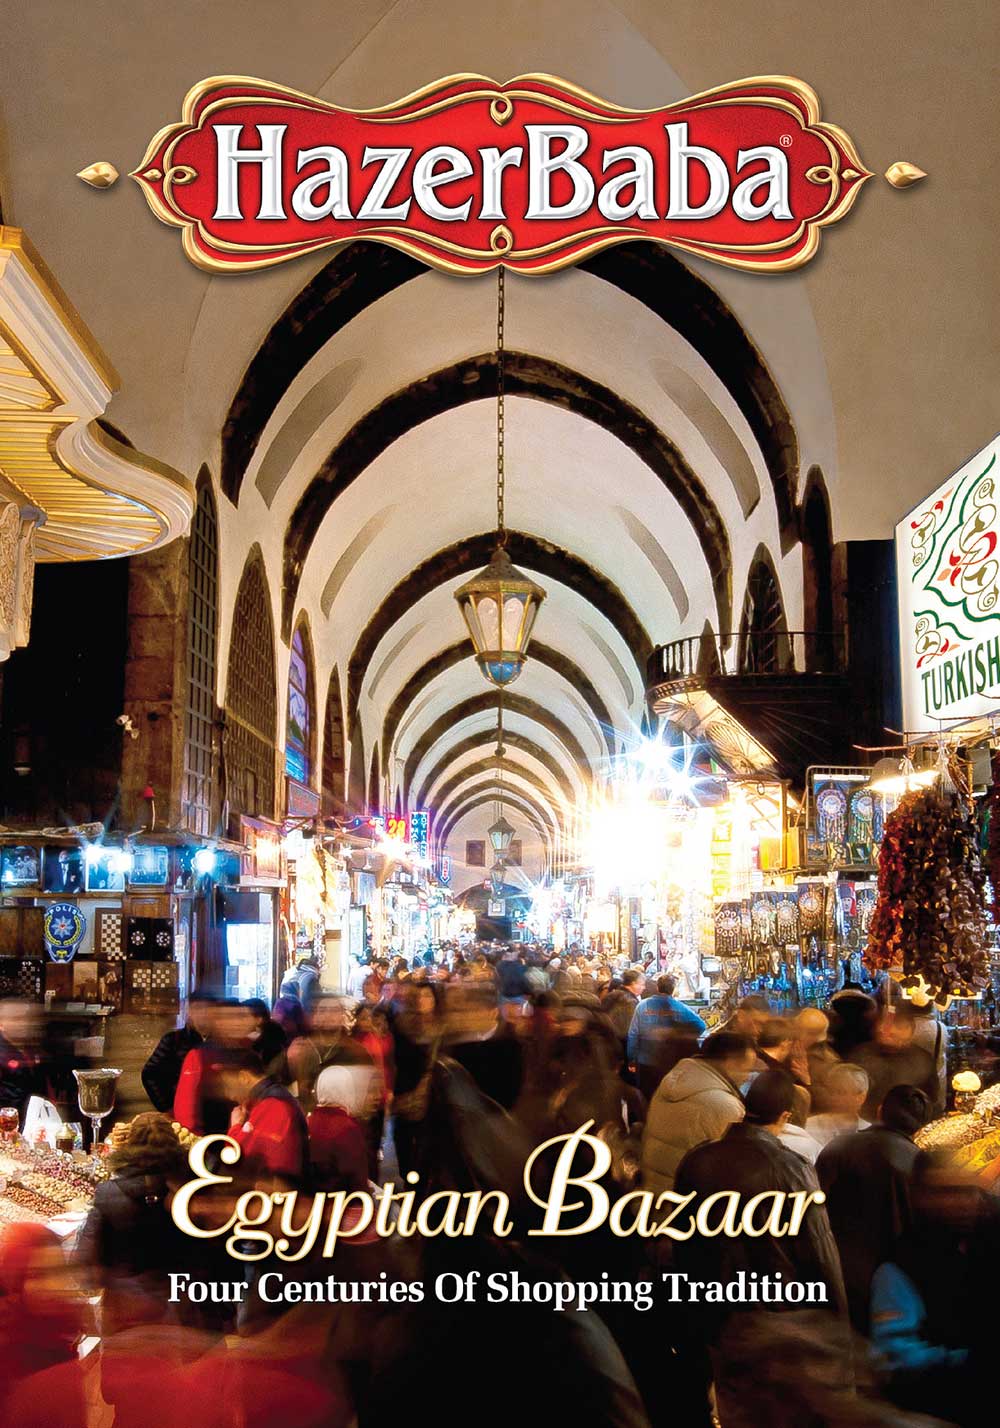 Achetez le café turc Hazer Baba - Grand Bazaar à Istanbul Shopping en ligne